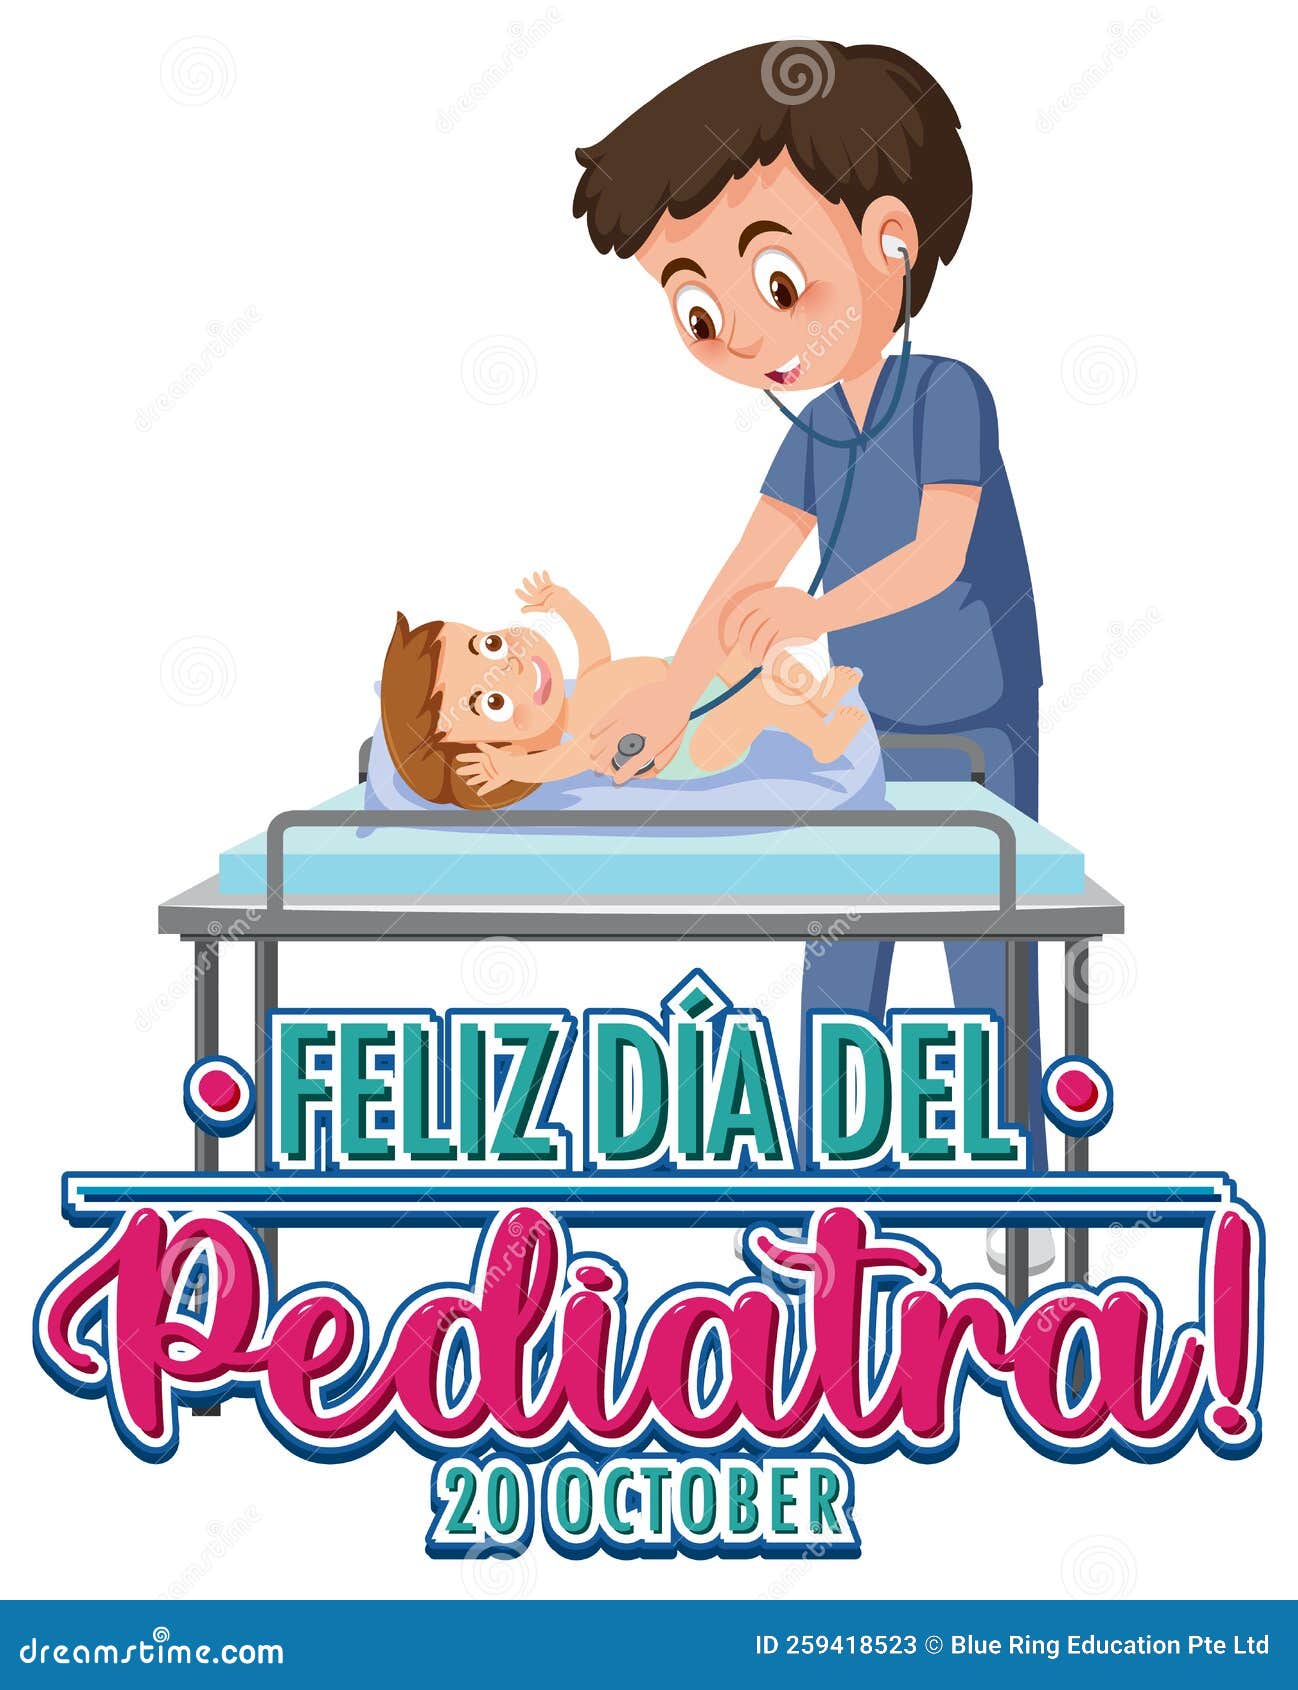 dia del pediatra text with cartoon character